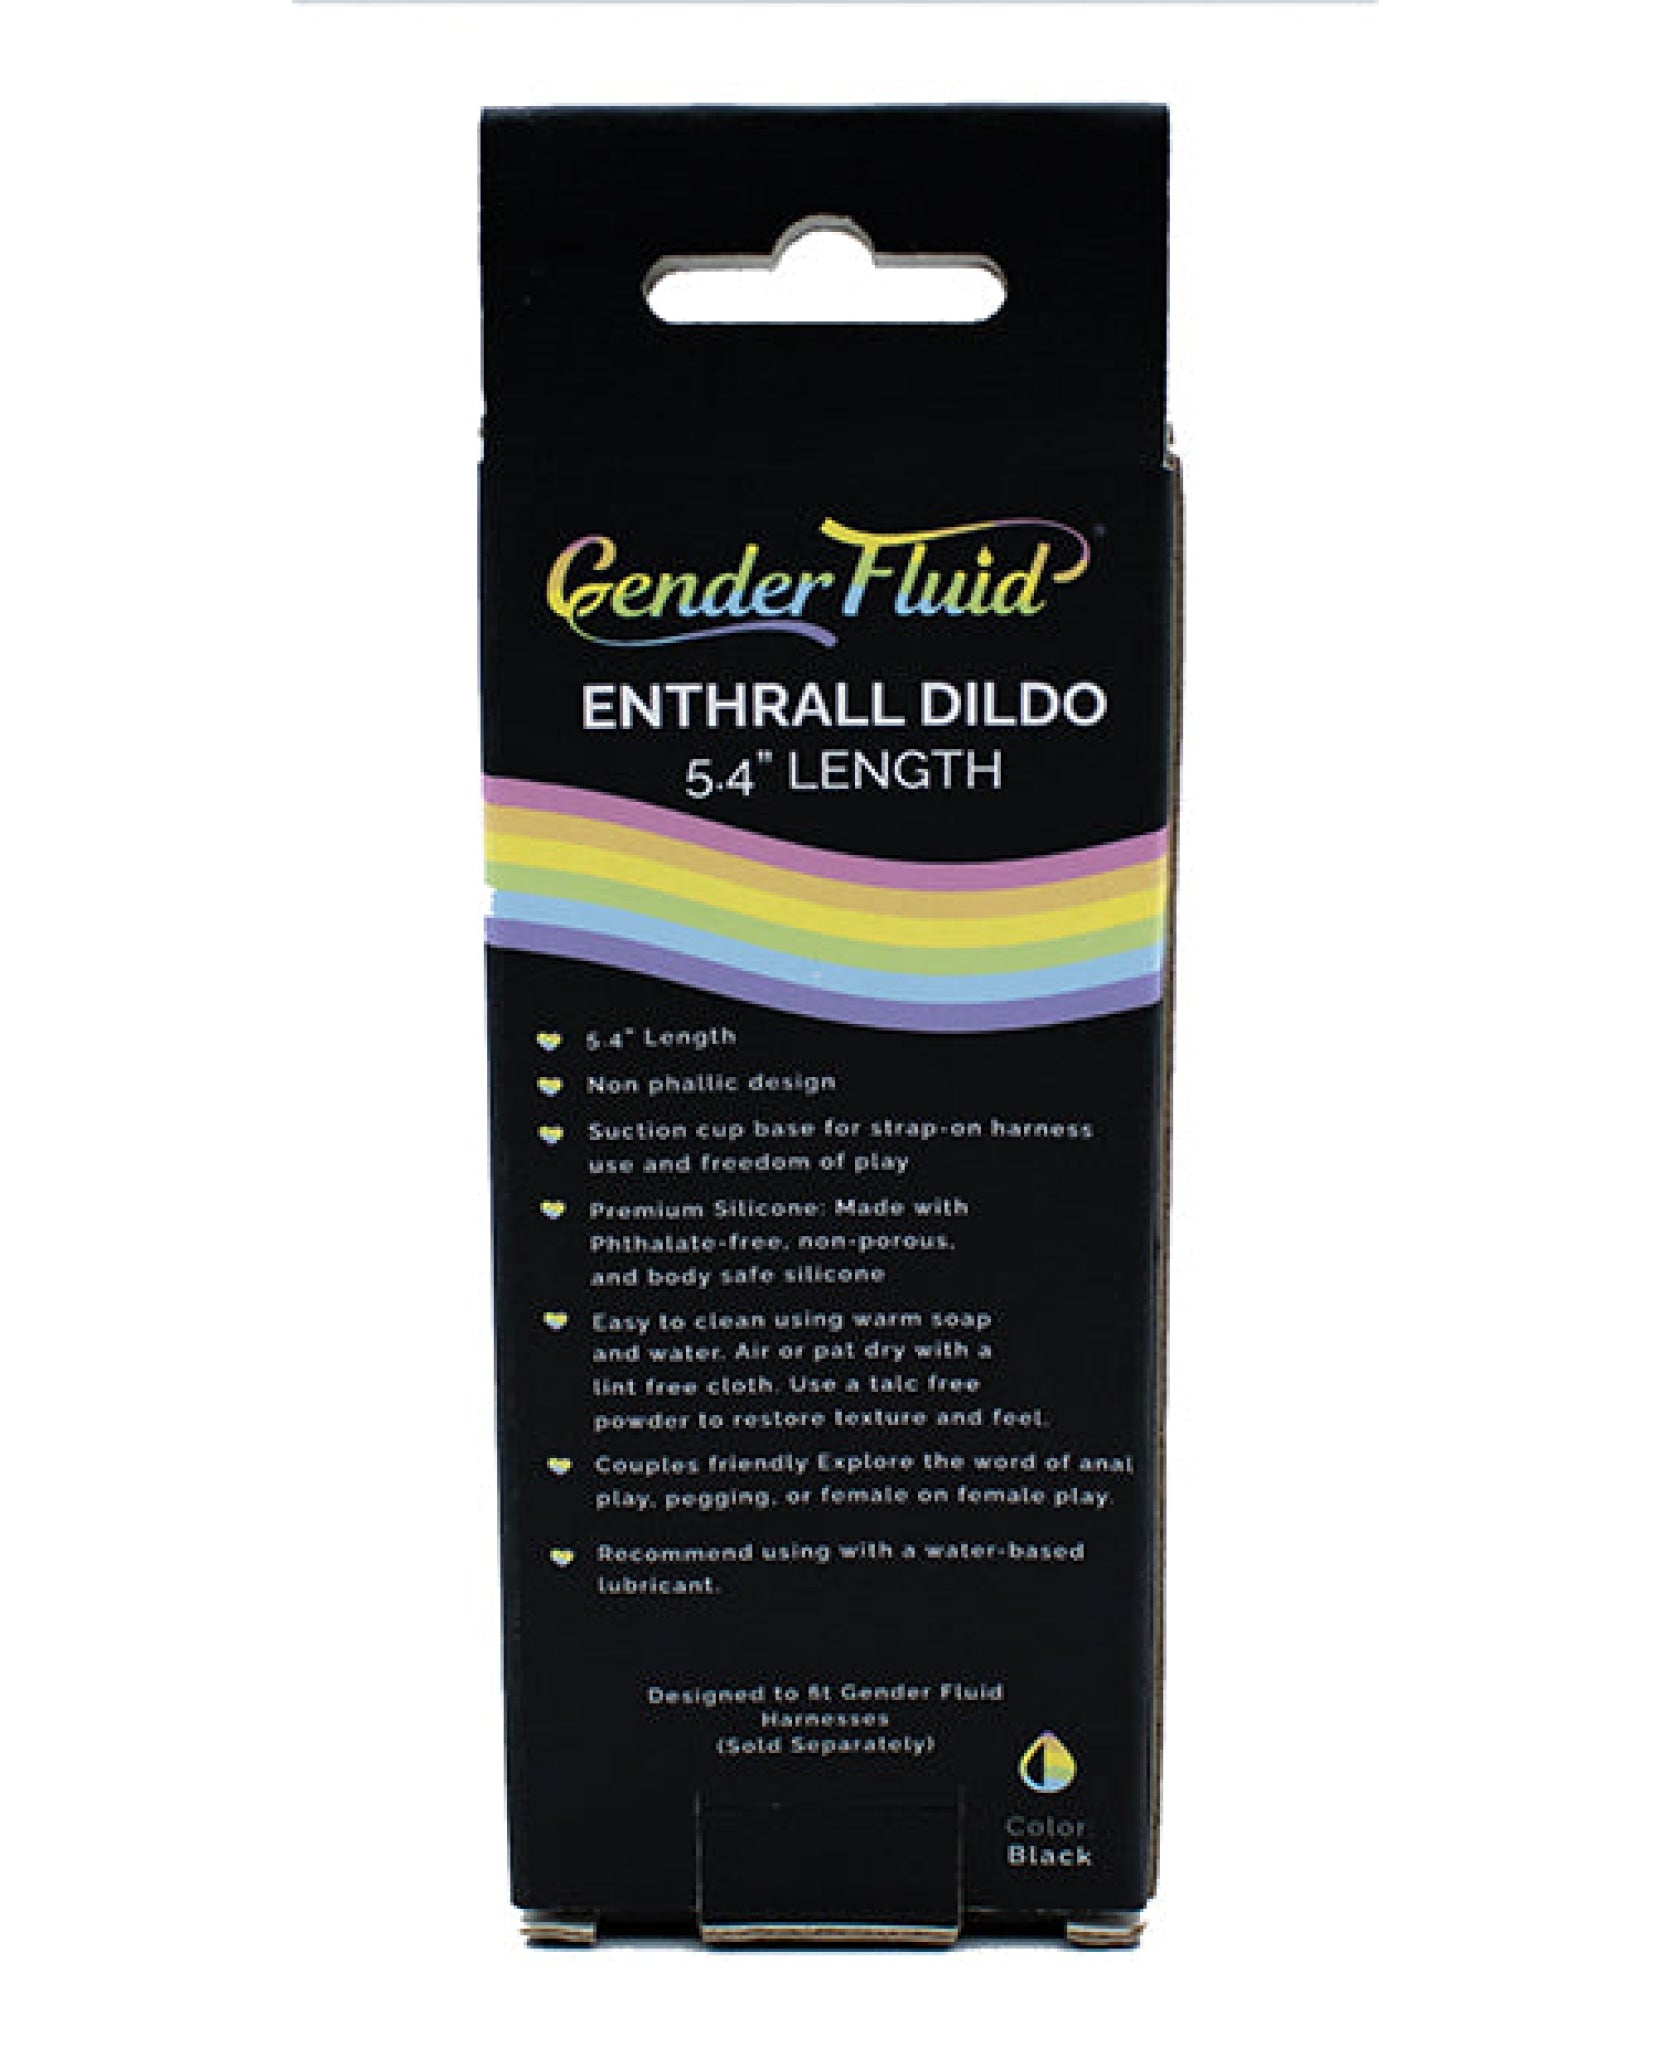 Gender Fluid 5.5" Enthrall Strap On Dildo - Black Gender Fluid